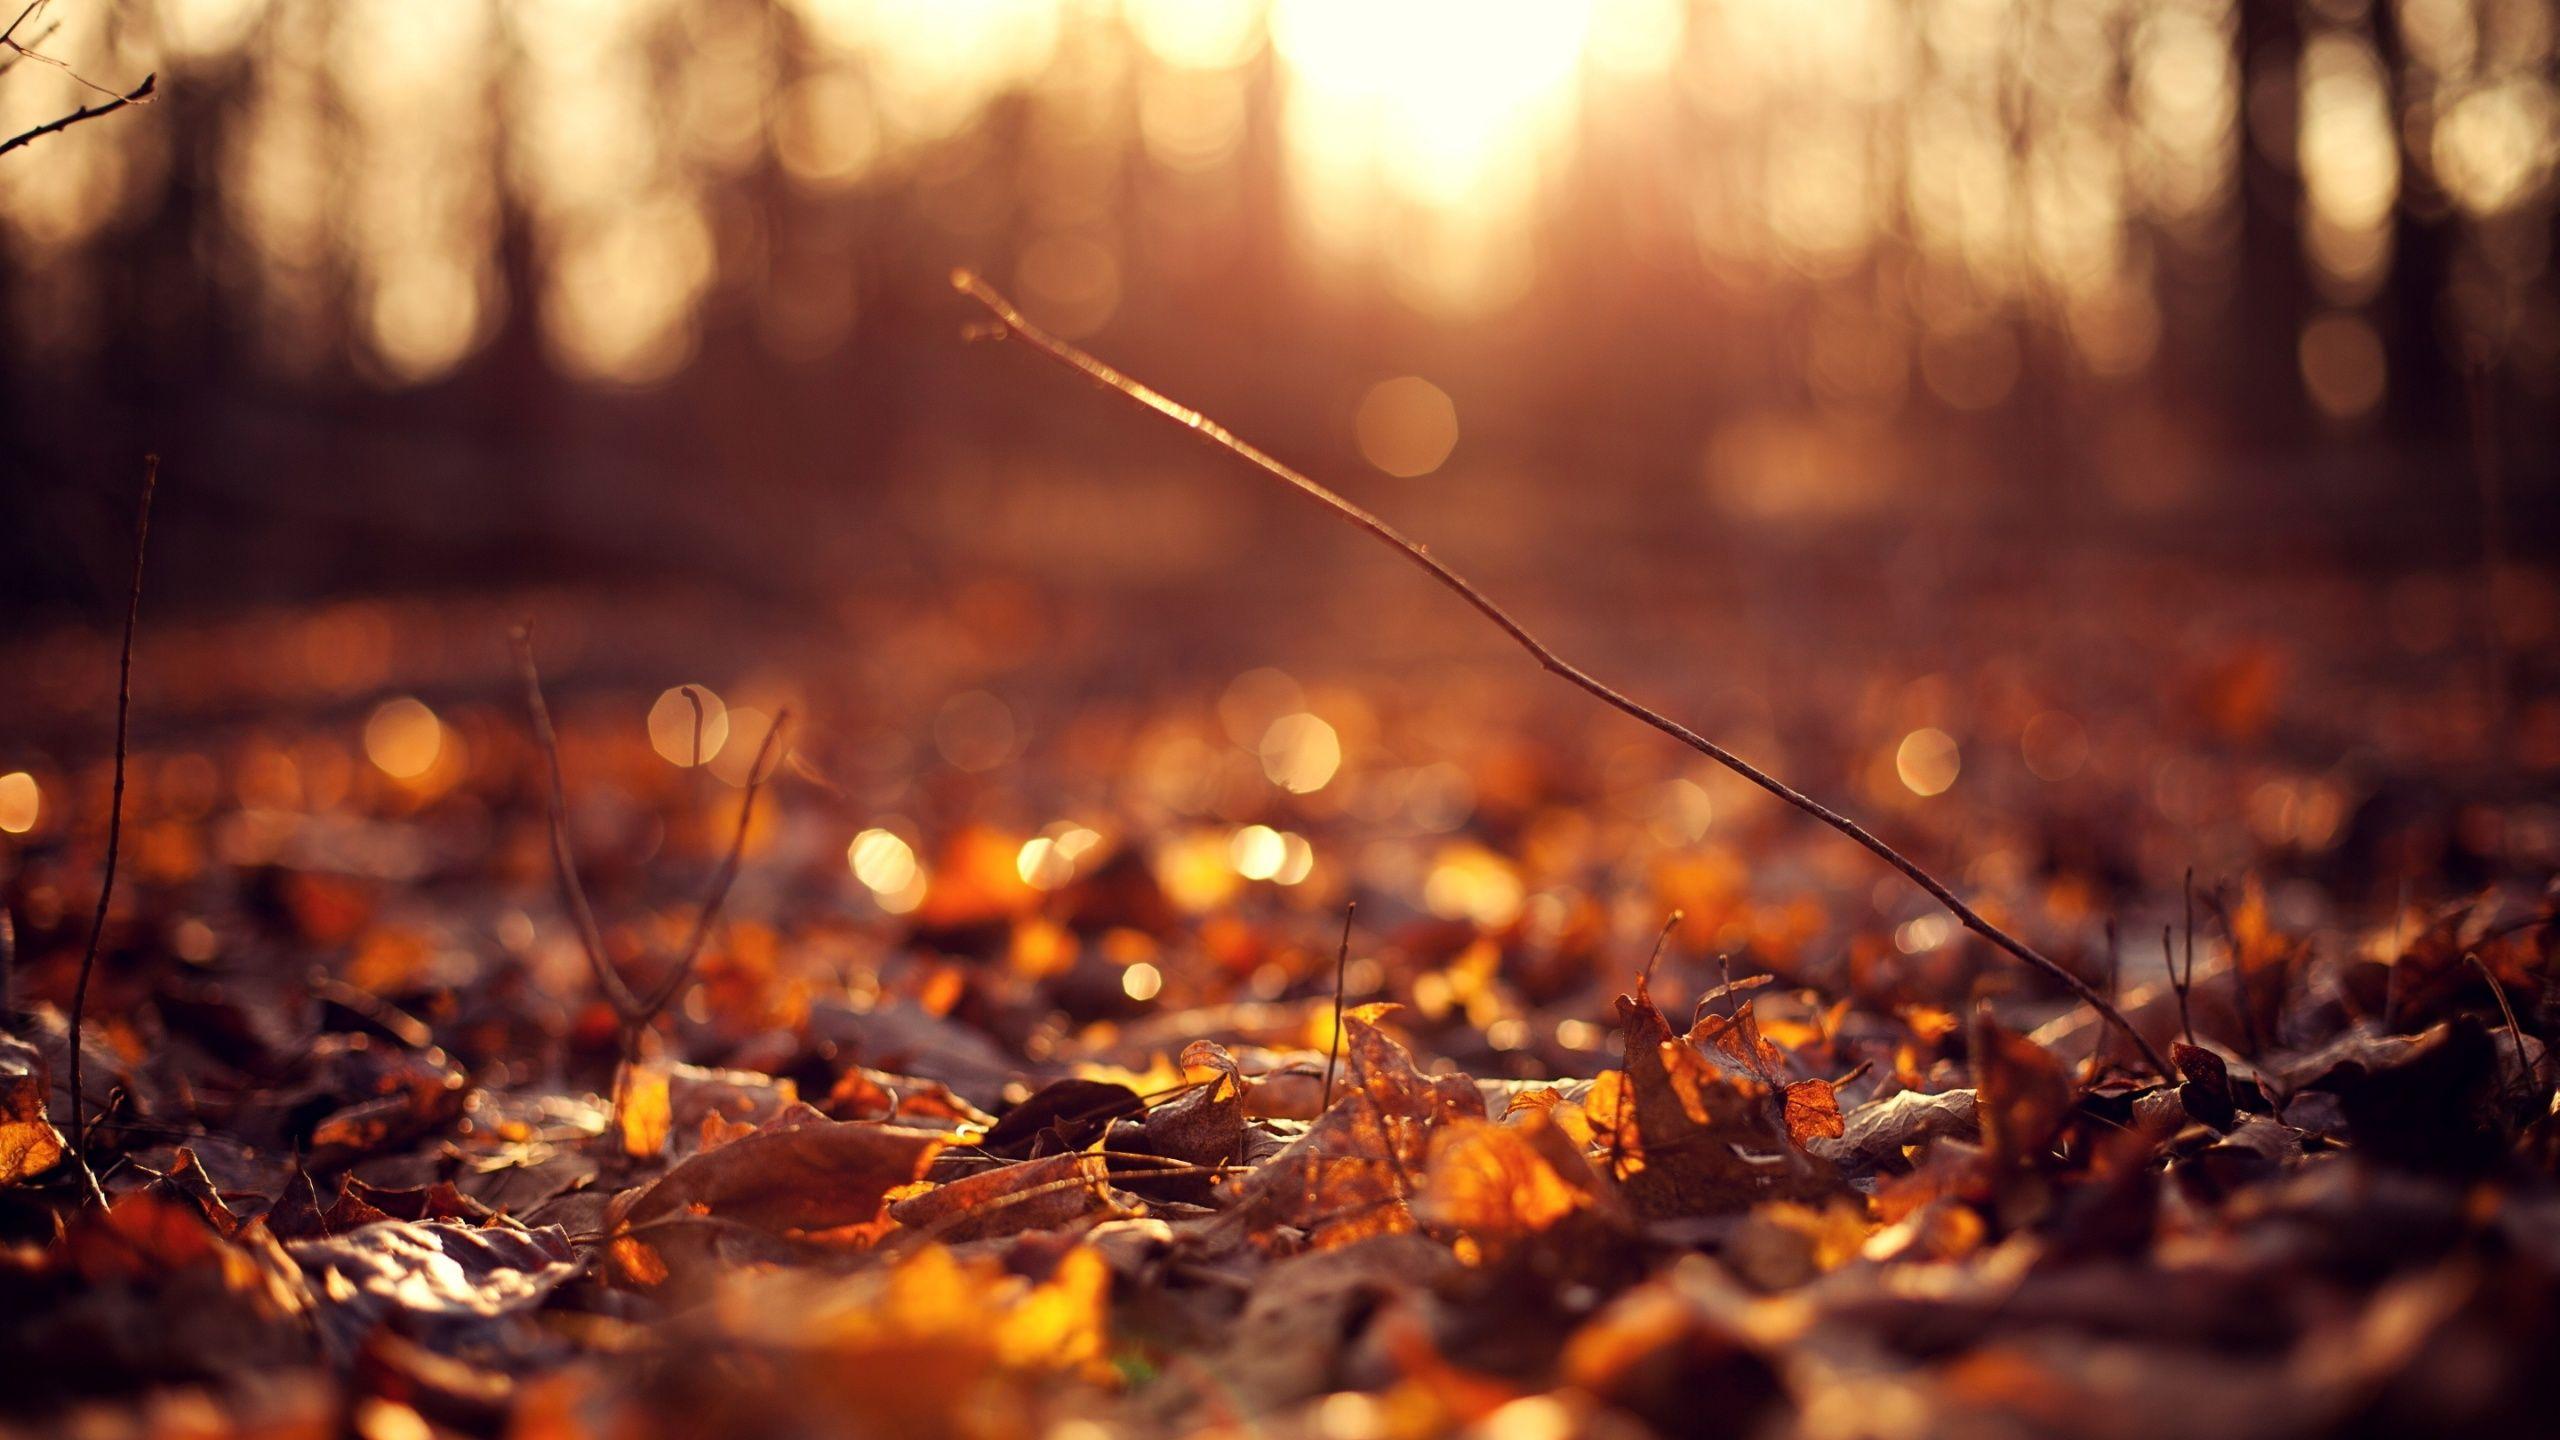 solar #autumn #sunset. Autumn leaves wallpaper